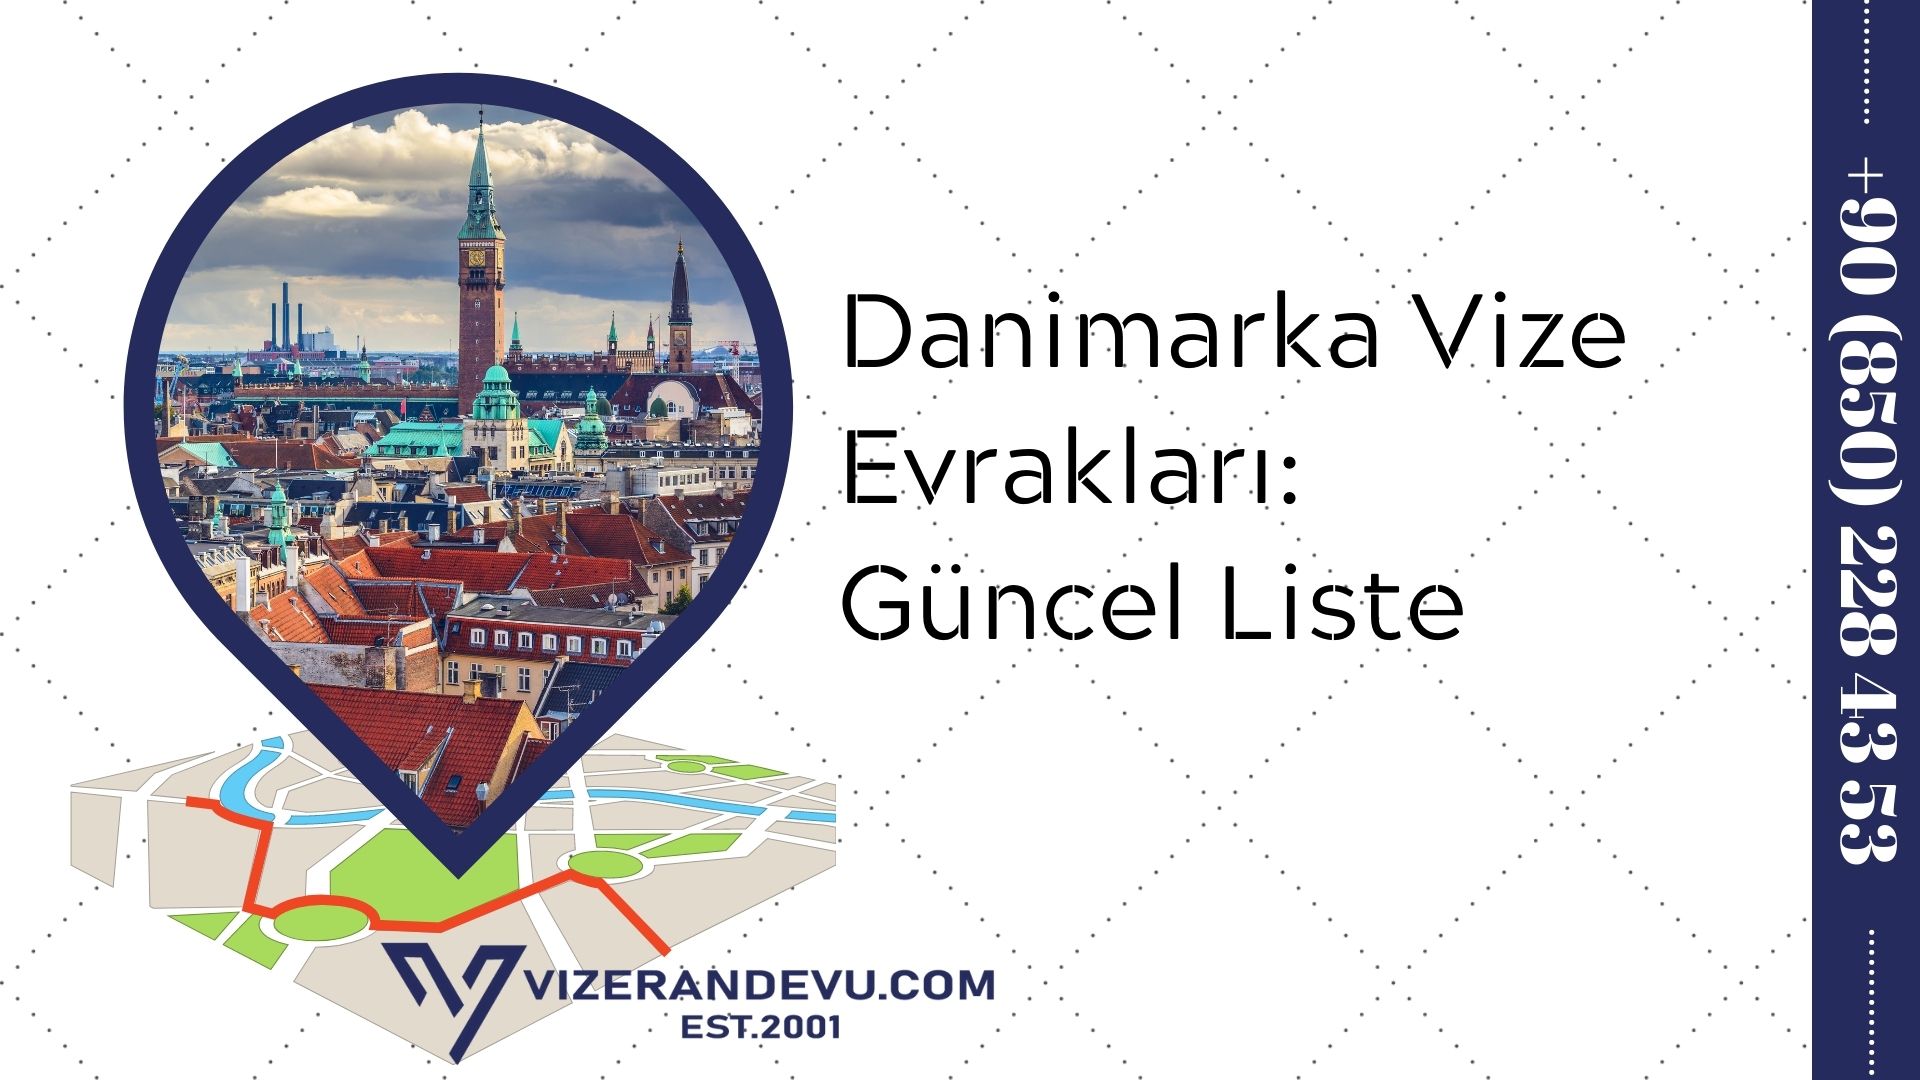 Danimarka Vize Evrakları: Güncel Liste 2021